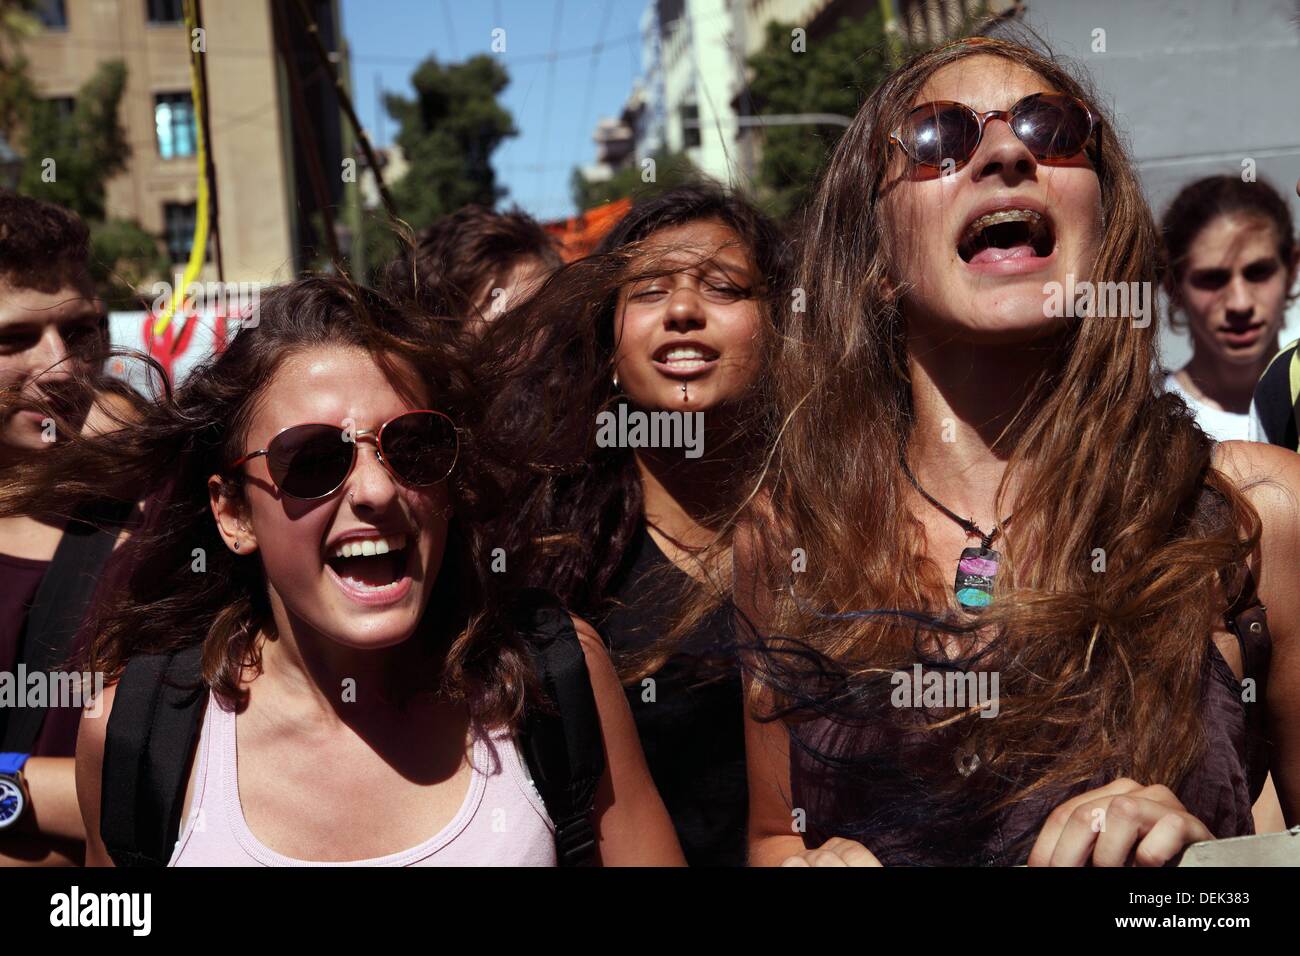 Athènes, Grèce. 18 sept., 2013. Les étudiants grecs protestent contre des licenciements d'enseignants à Athènes. Dpa : Crédit photo alliance/Alamy Live News Banque D'Images